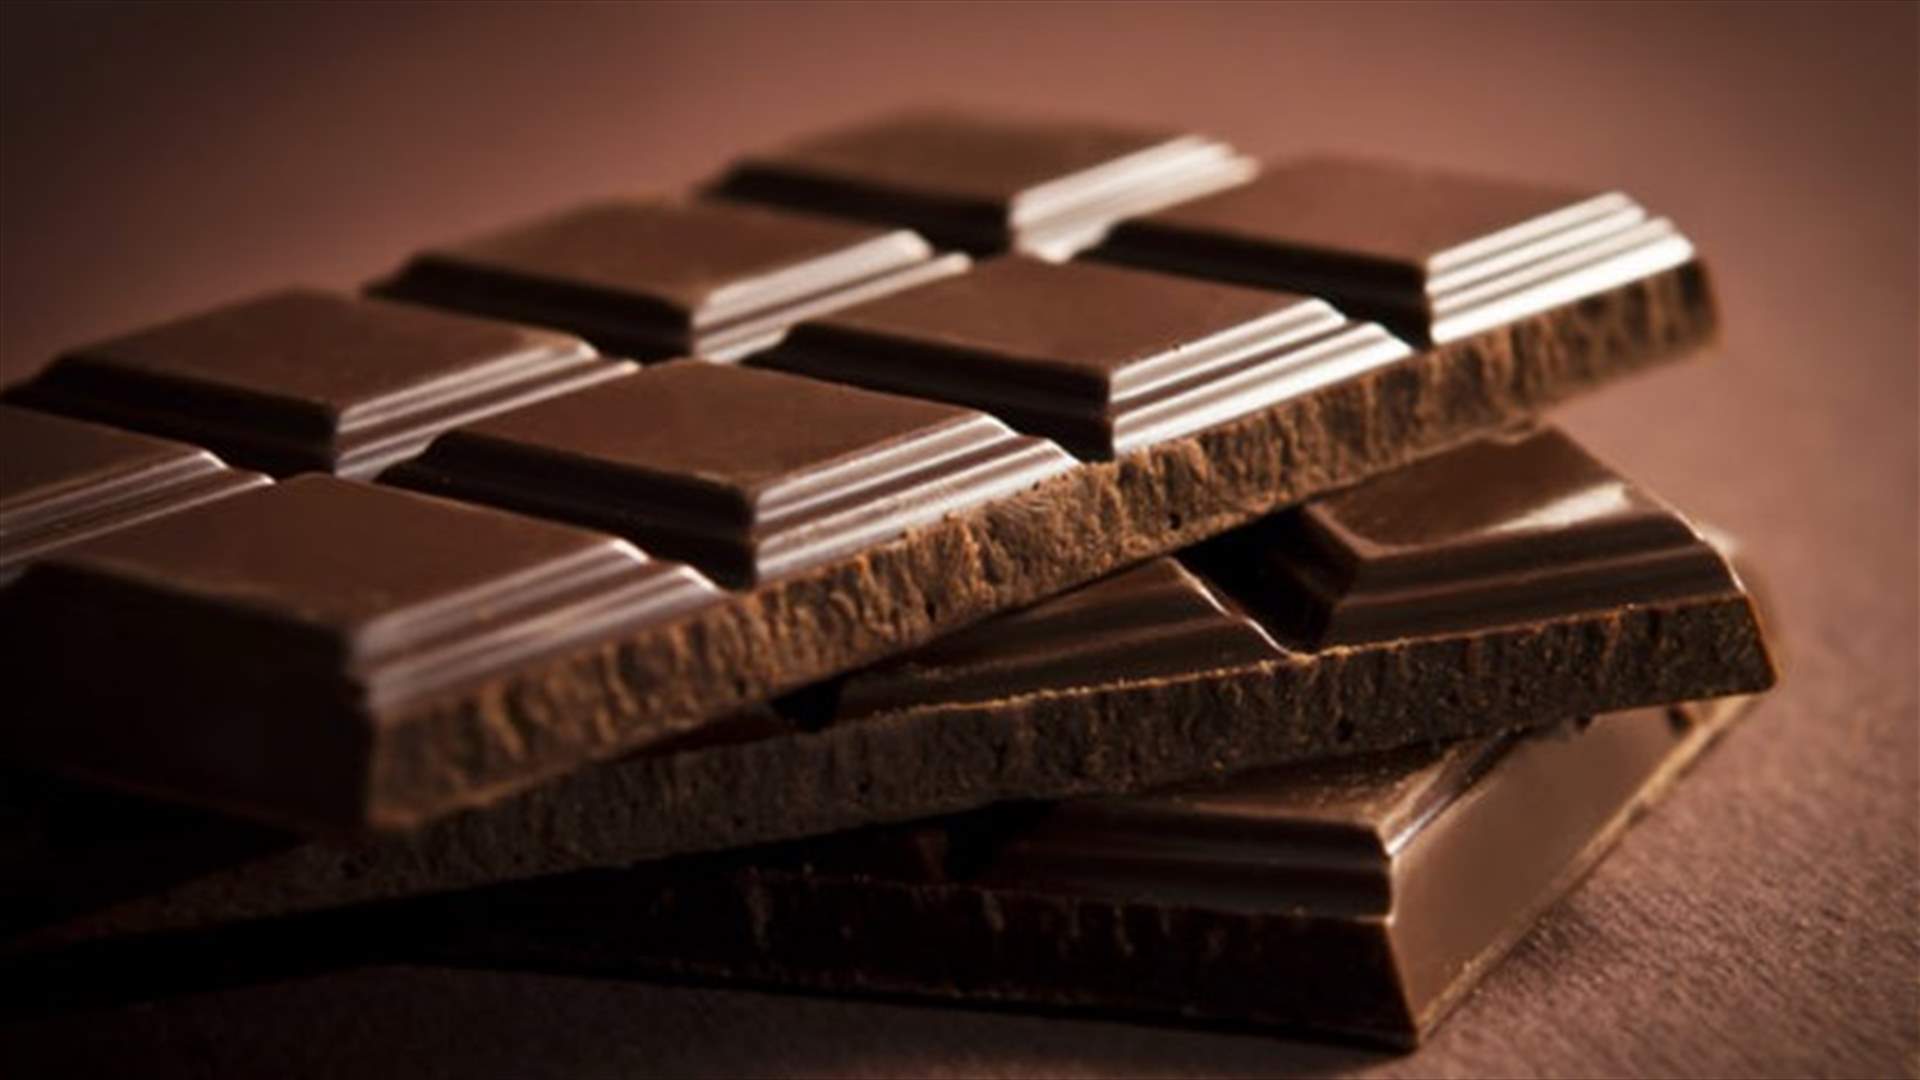 سبب صحي جديد سيجعلكم تعشقون الشوكولاته!